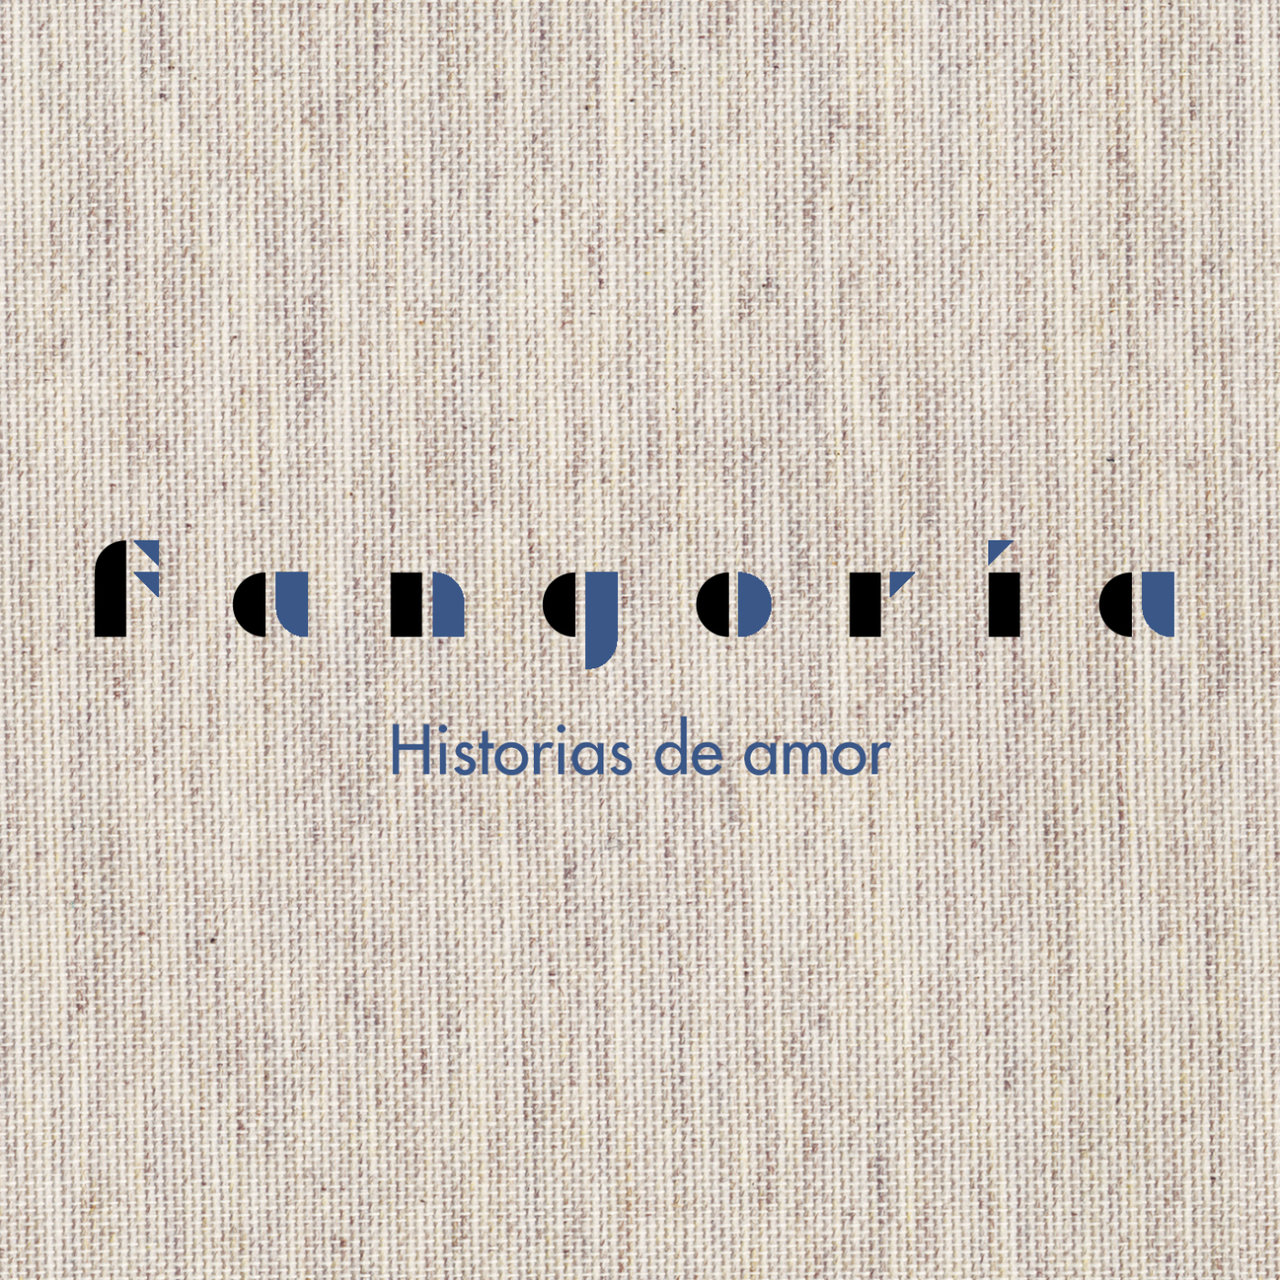 Fangoria — Historias de amor cover artwork